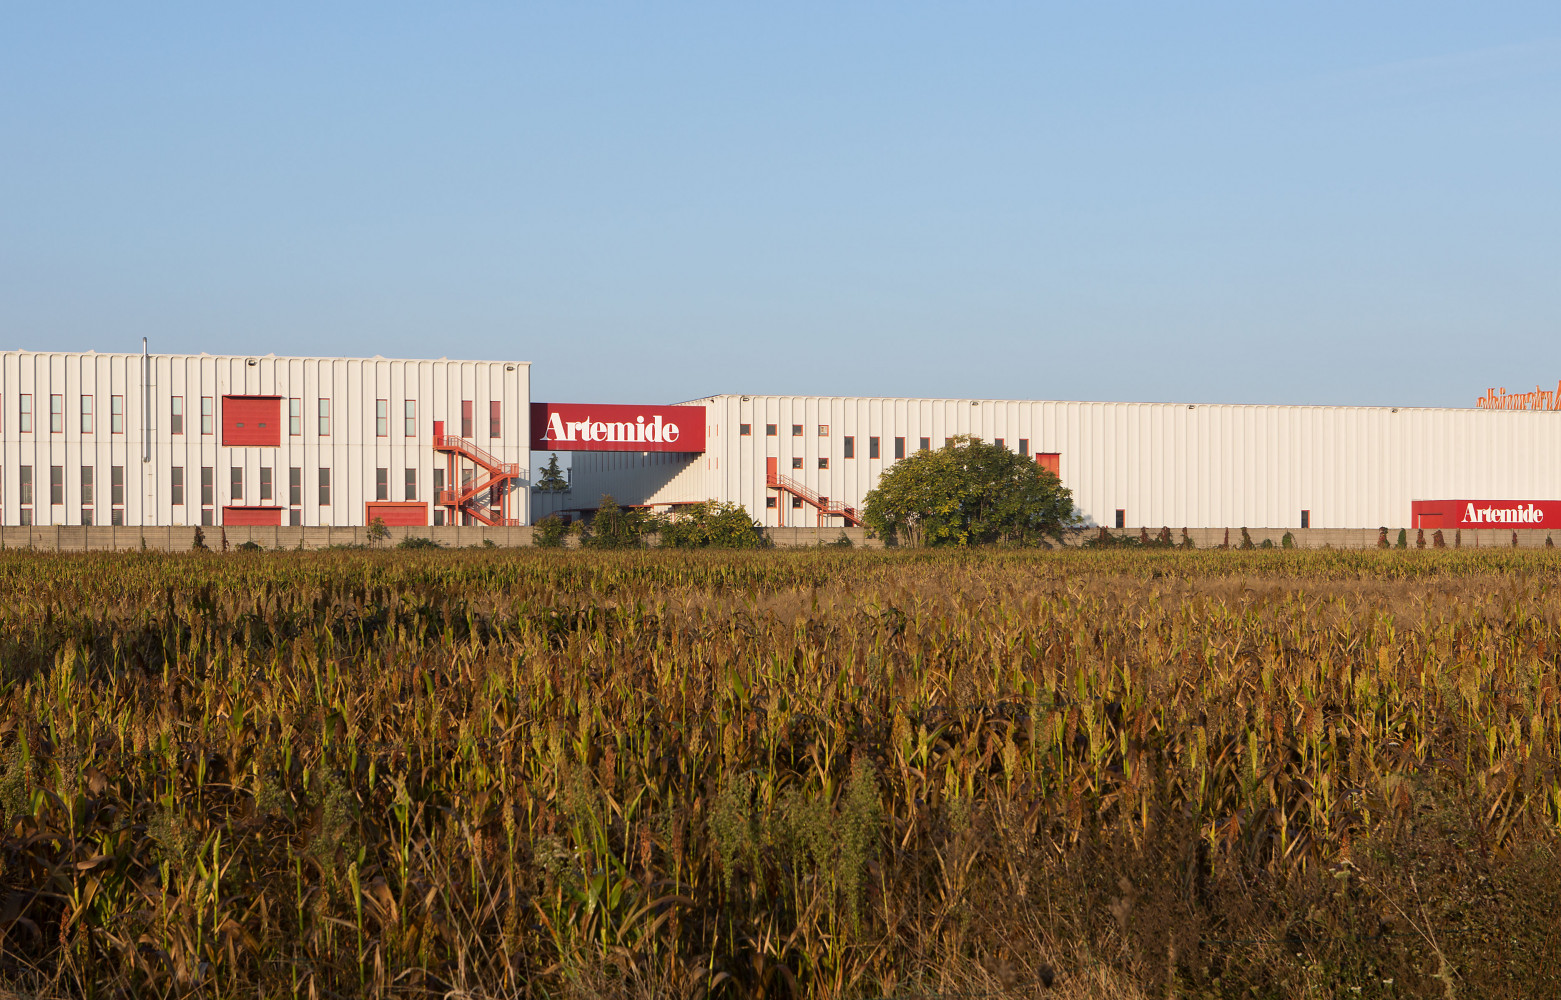 L'usine Artémide et son enseigne qui relie ces deux bâtiments de la banlieue milanaise.